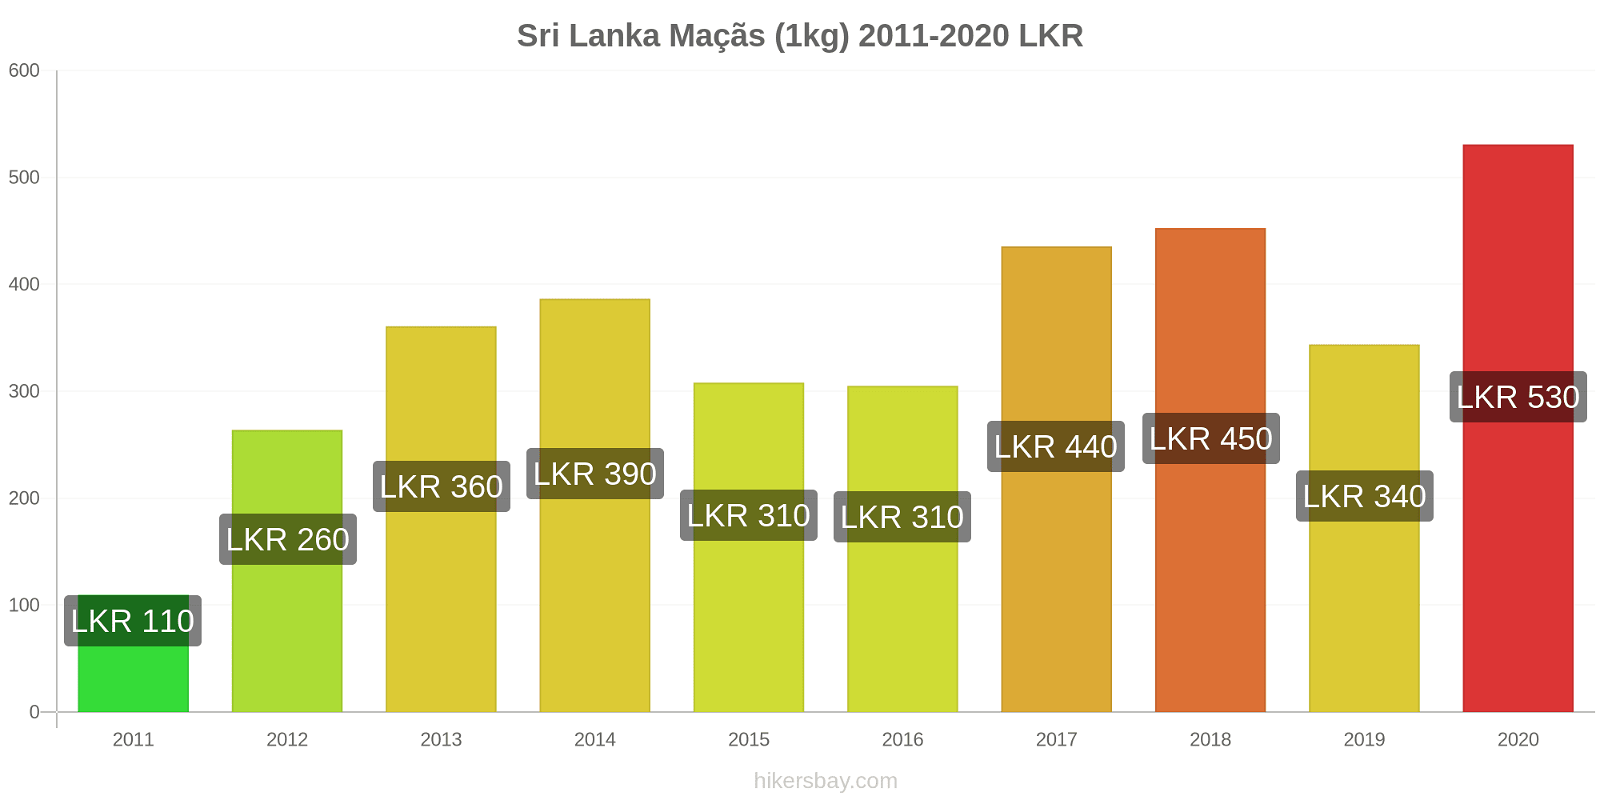 Sri Lanka variação de preço Maçãs (1kg) hikersbay.com